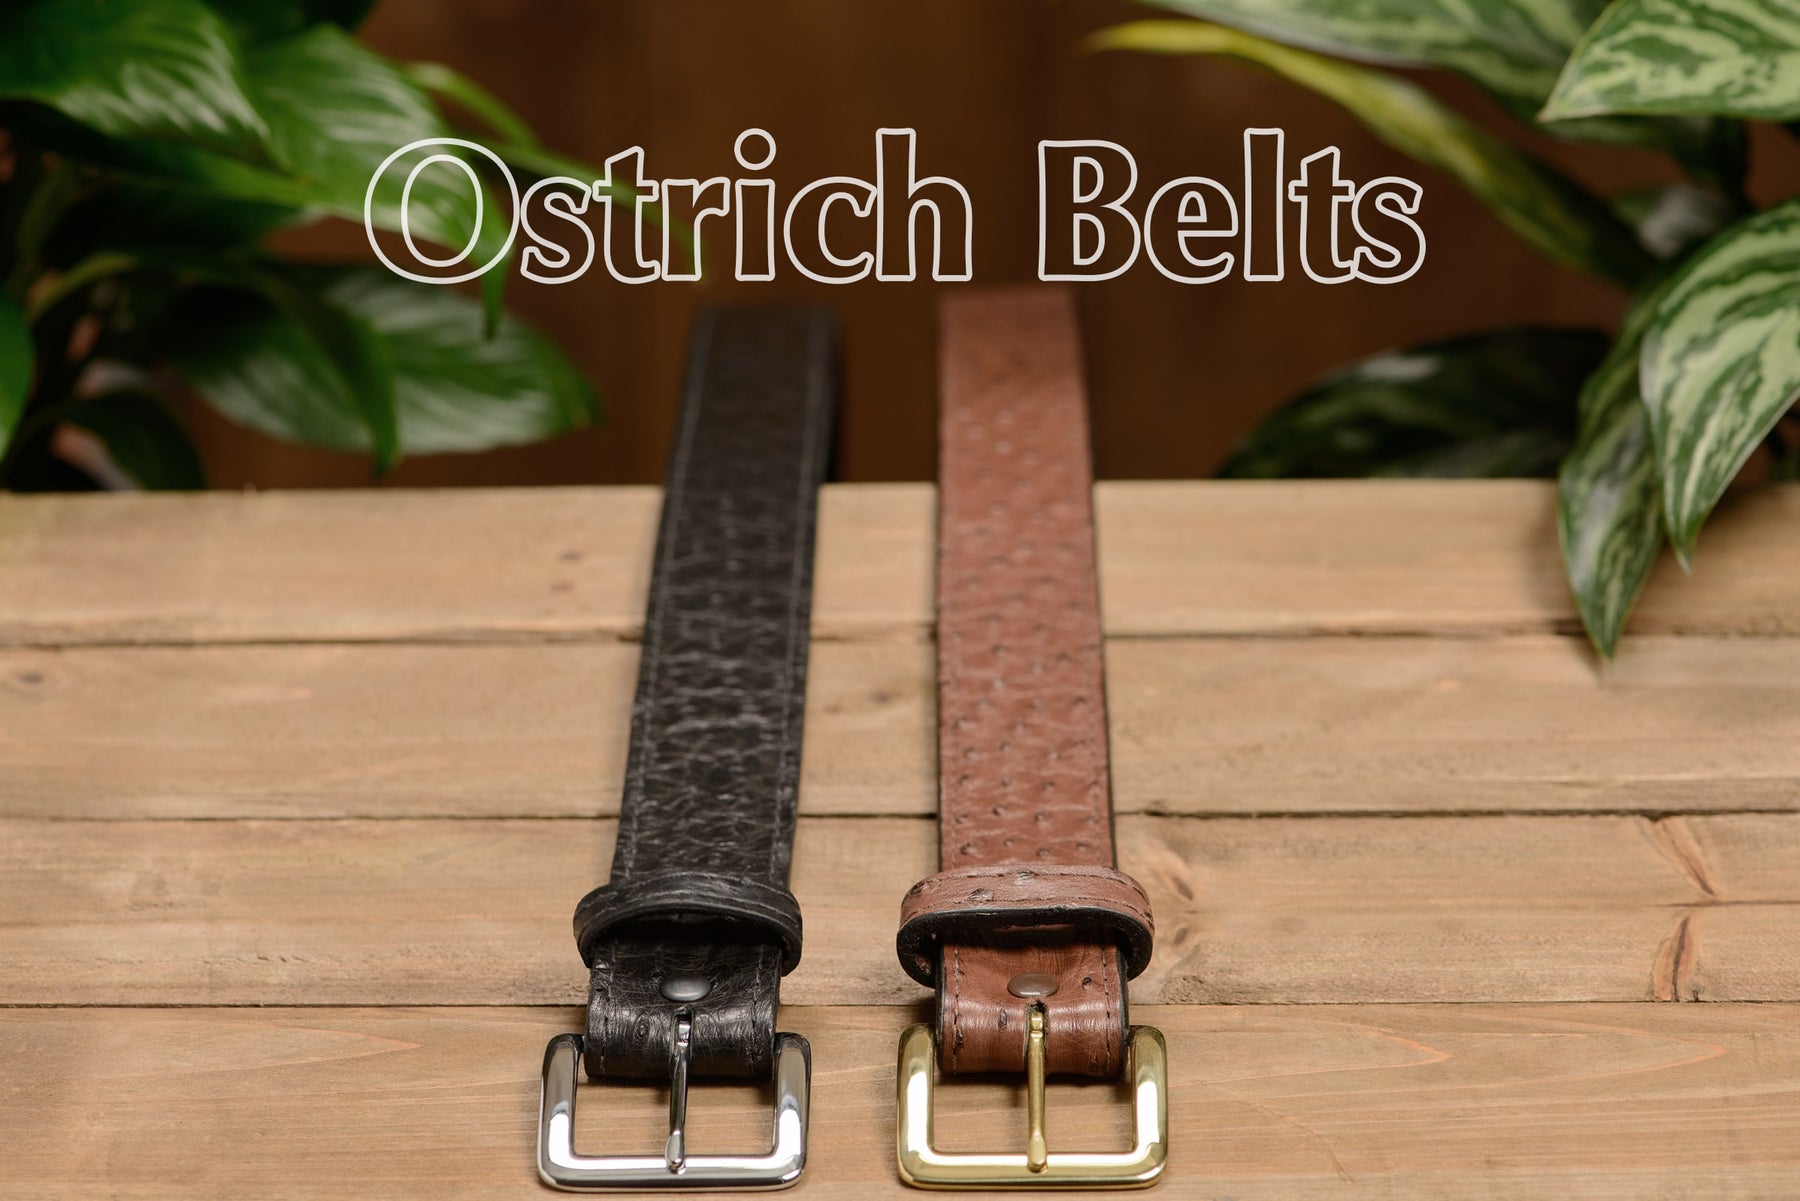 Genuine South African Ostrich Skin Belt in Vintage Dark Cognac Reg. size:46